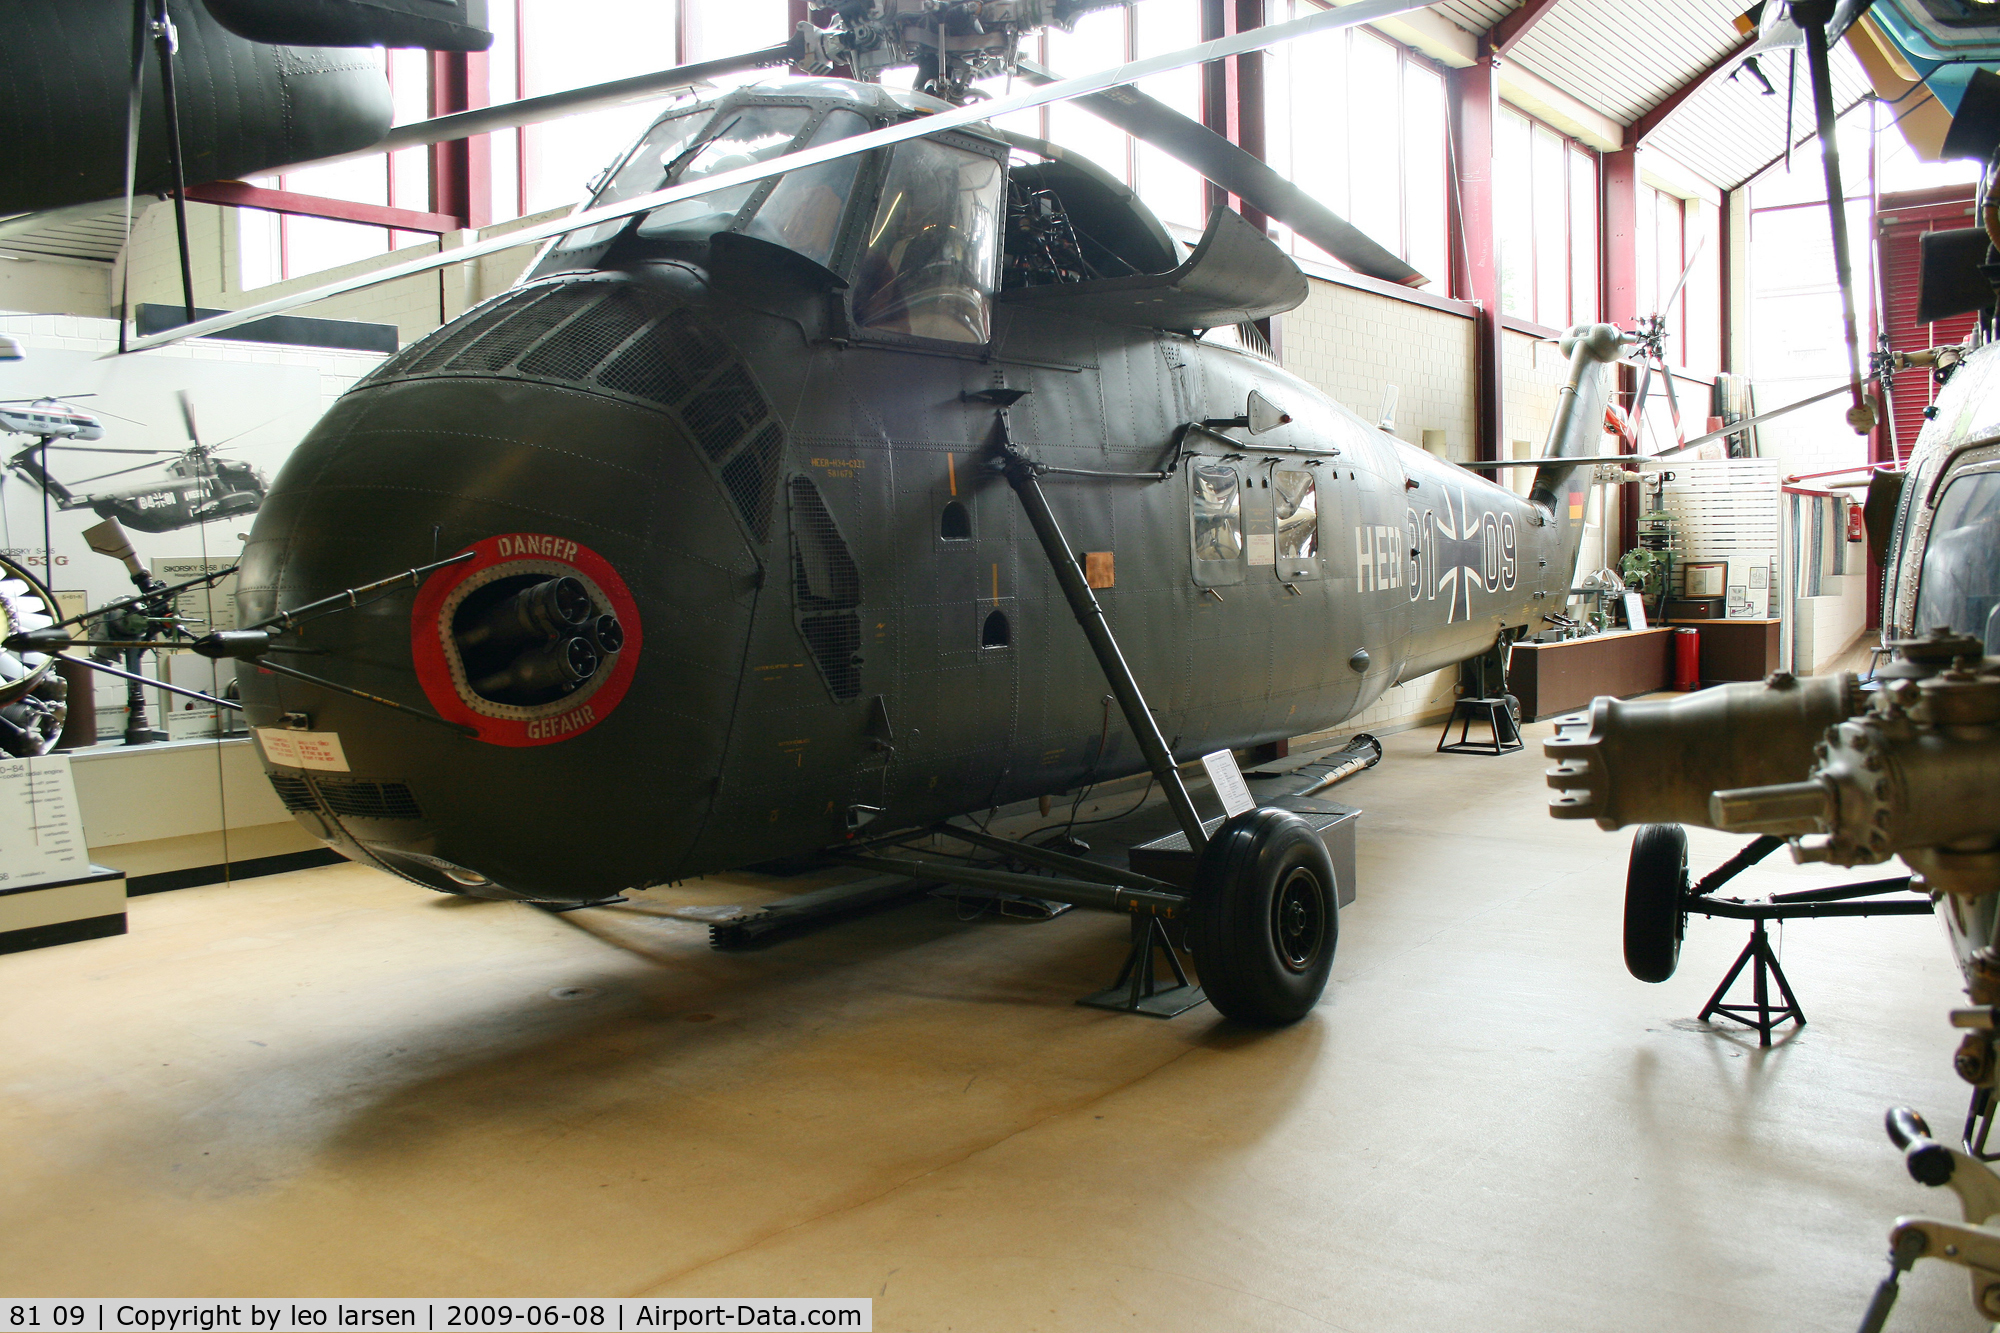 81 09, Sikorsky H-34G Choctaw C/N 58-1679, Bückeburg Helikopter Museum
8.6.09